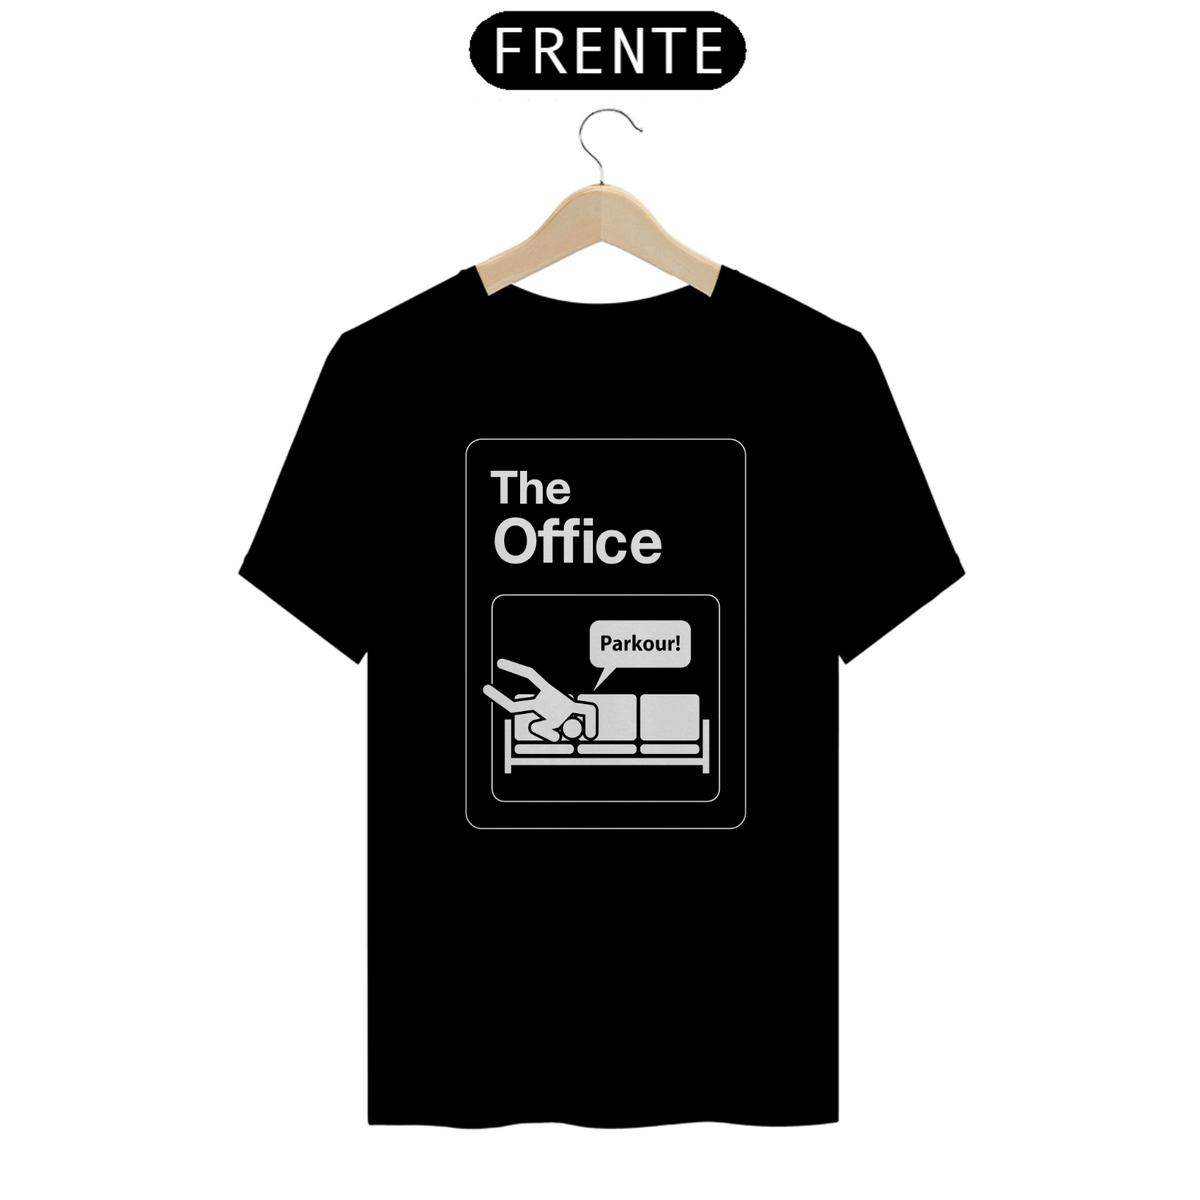 Nome do produto: The Office: Parkour (cores escuras)